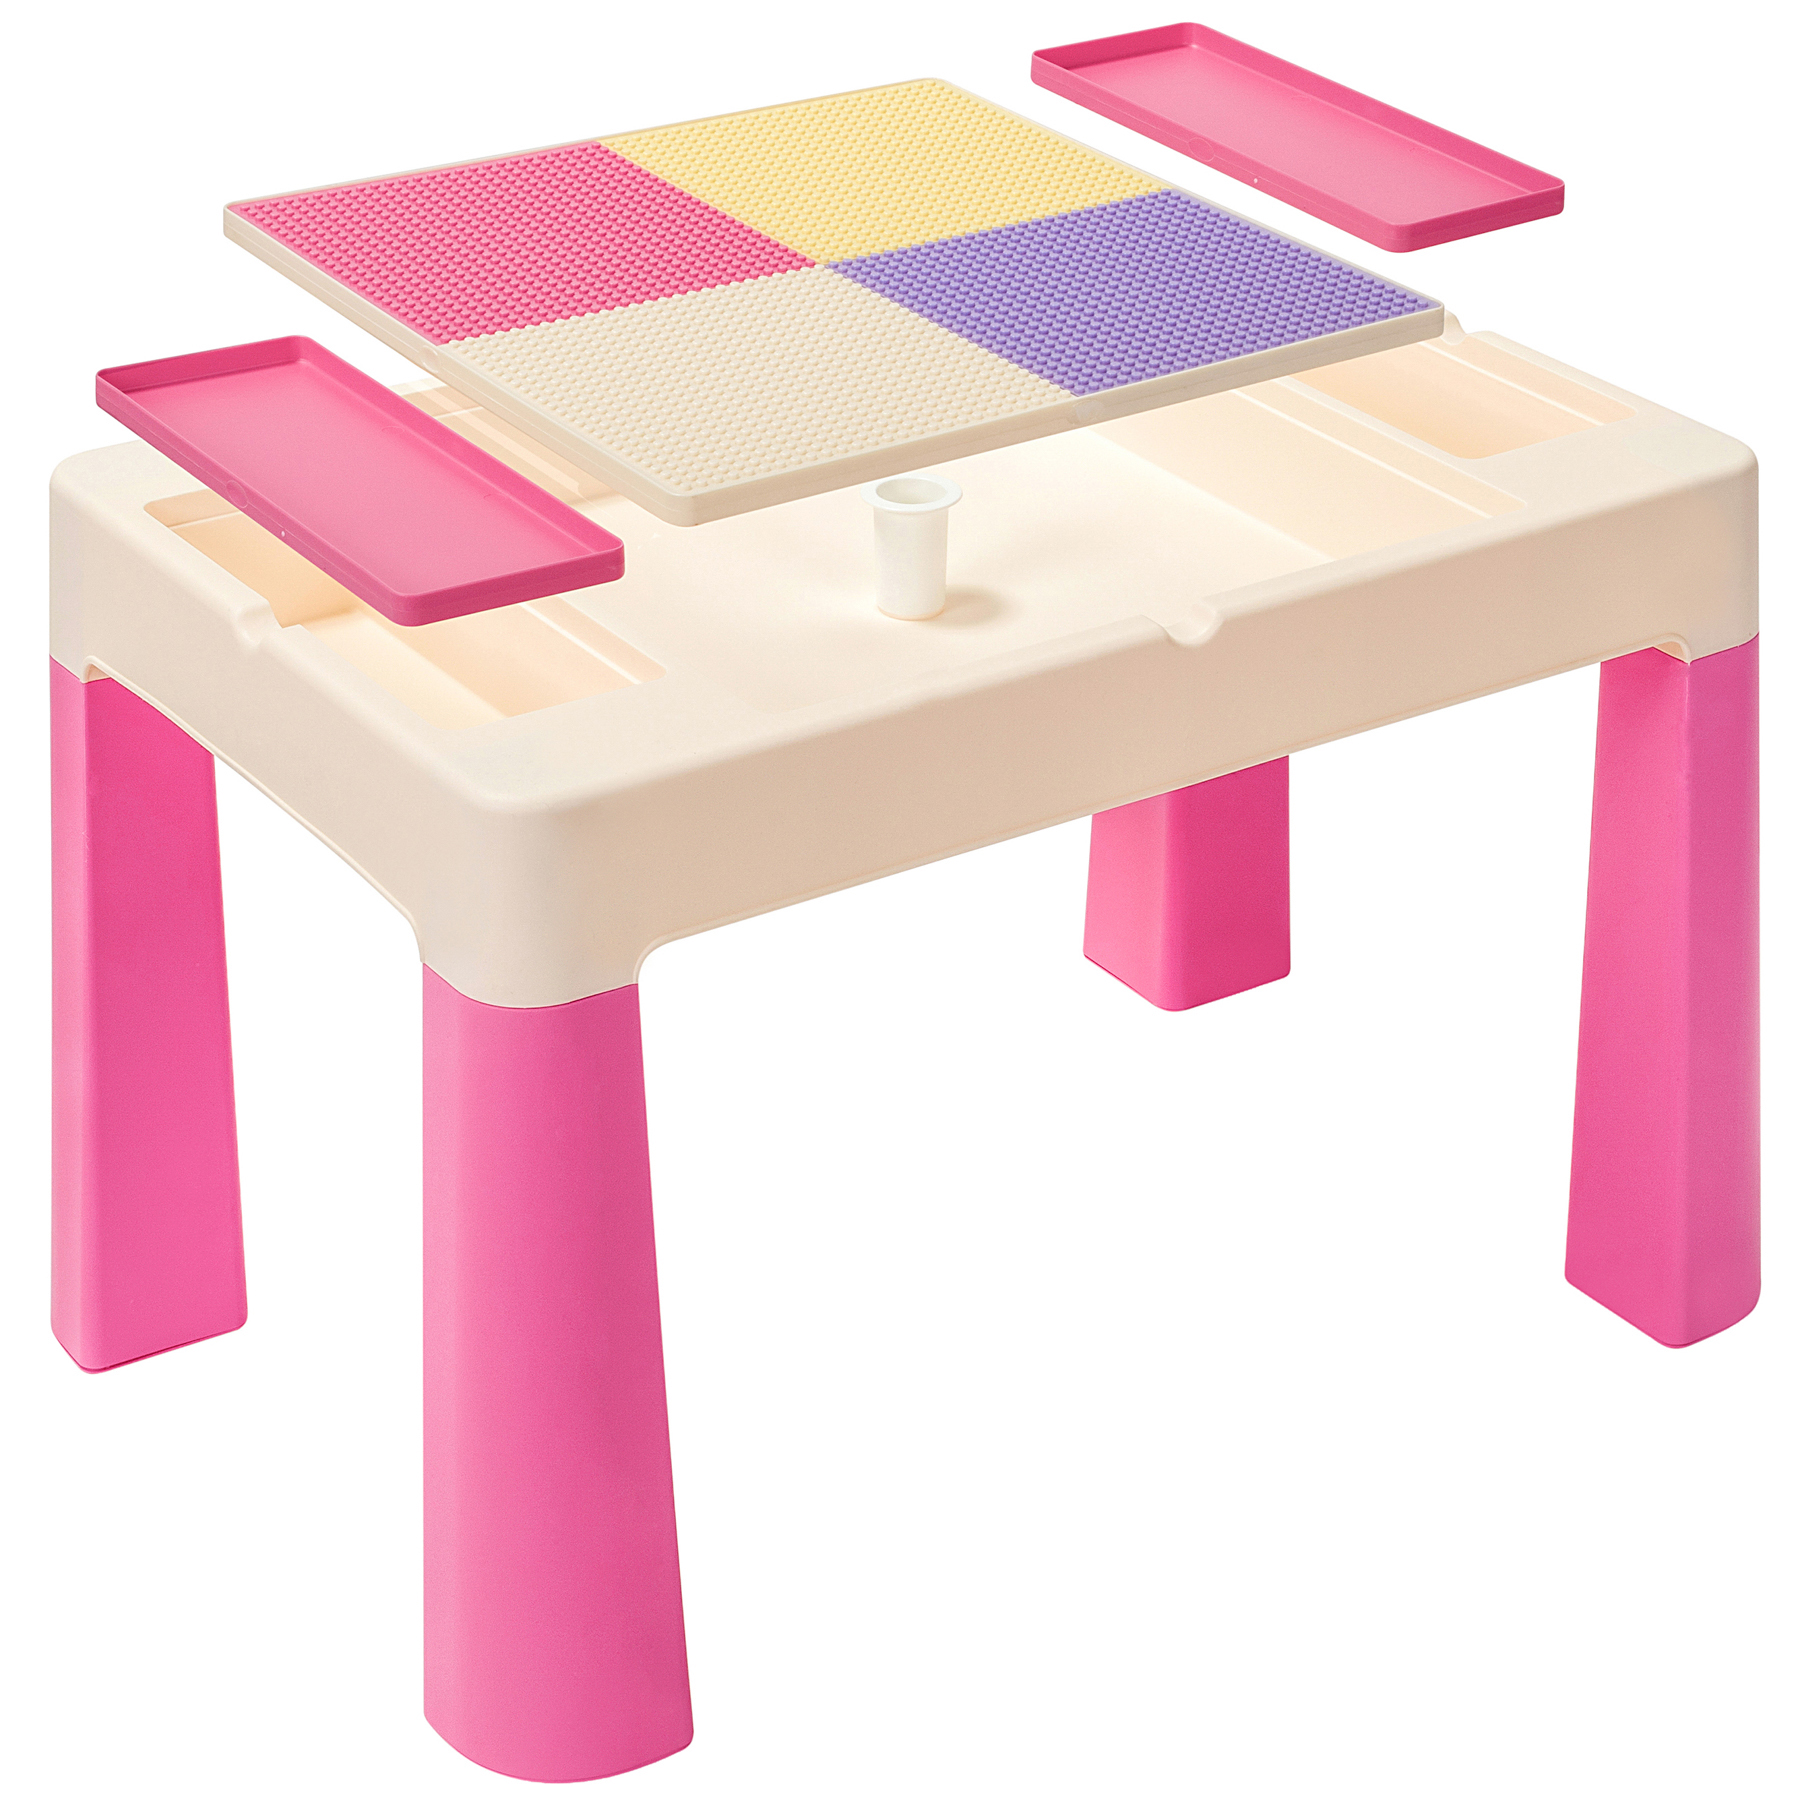 Практичная столешница-трансформер из обеденного стола легко превращается в игровую площадку или оригинальную панель для конструкторов